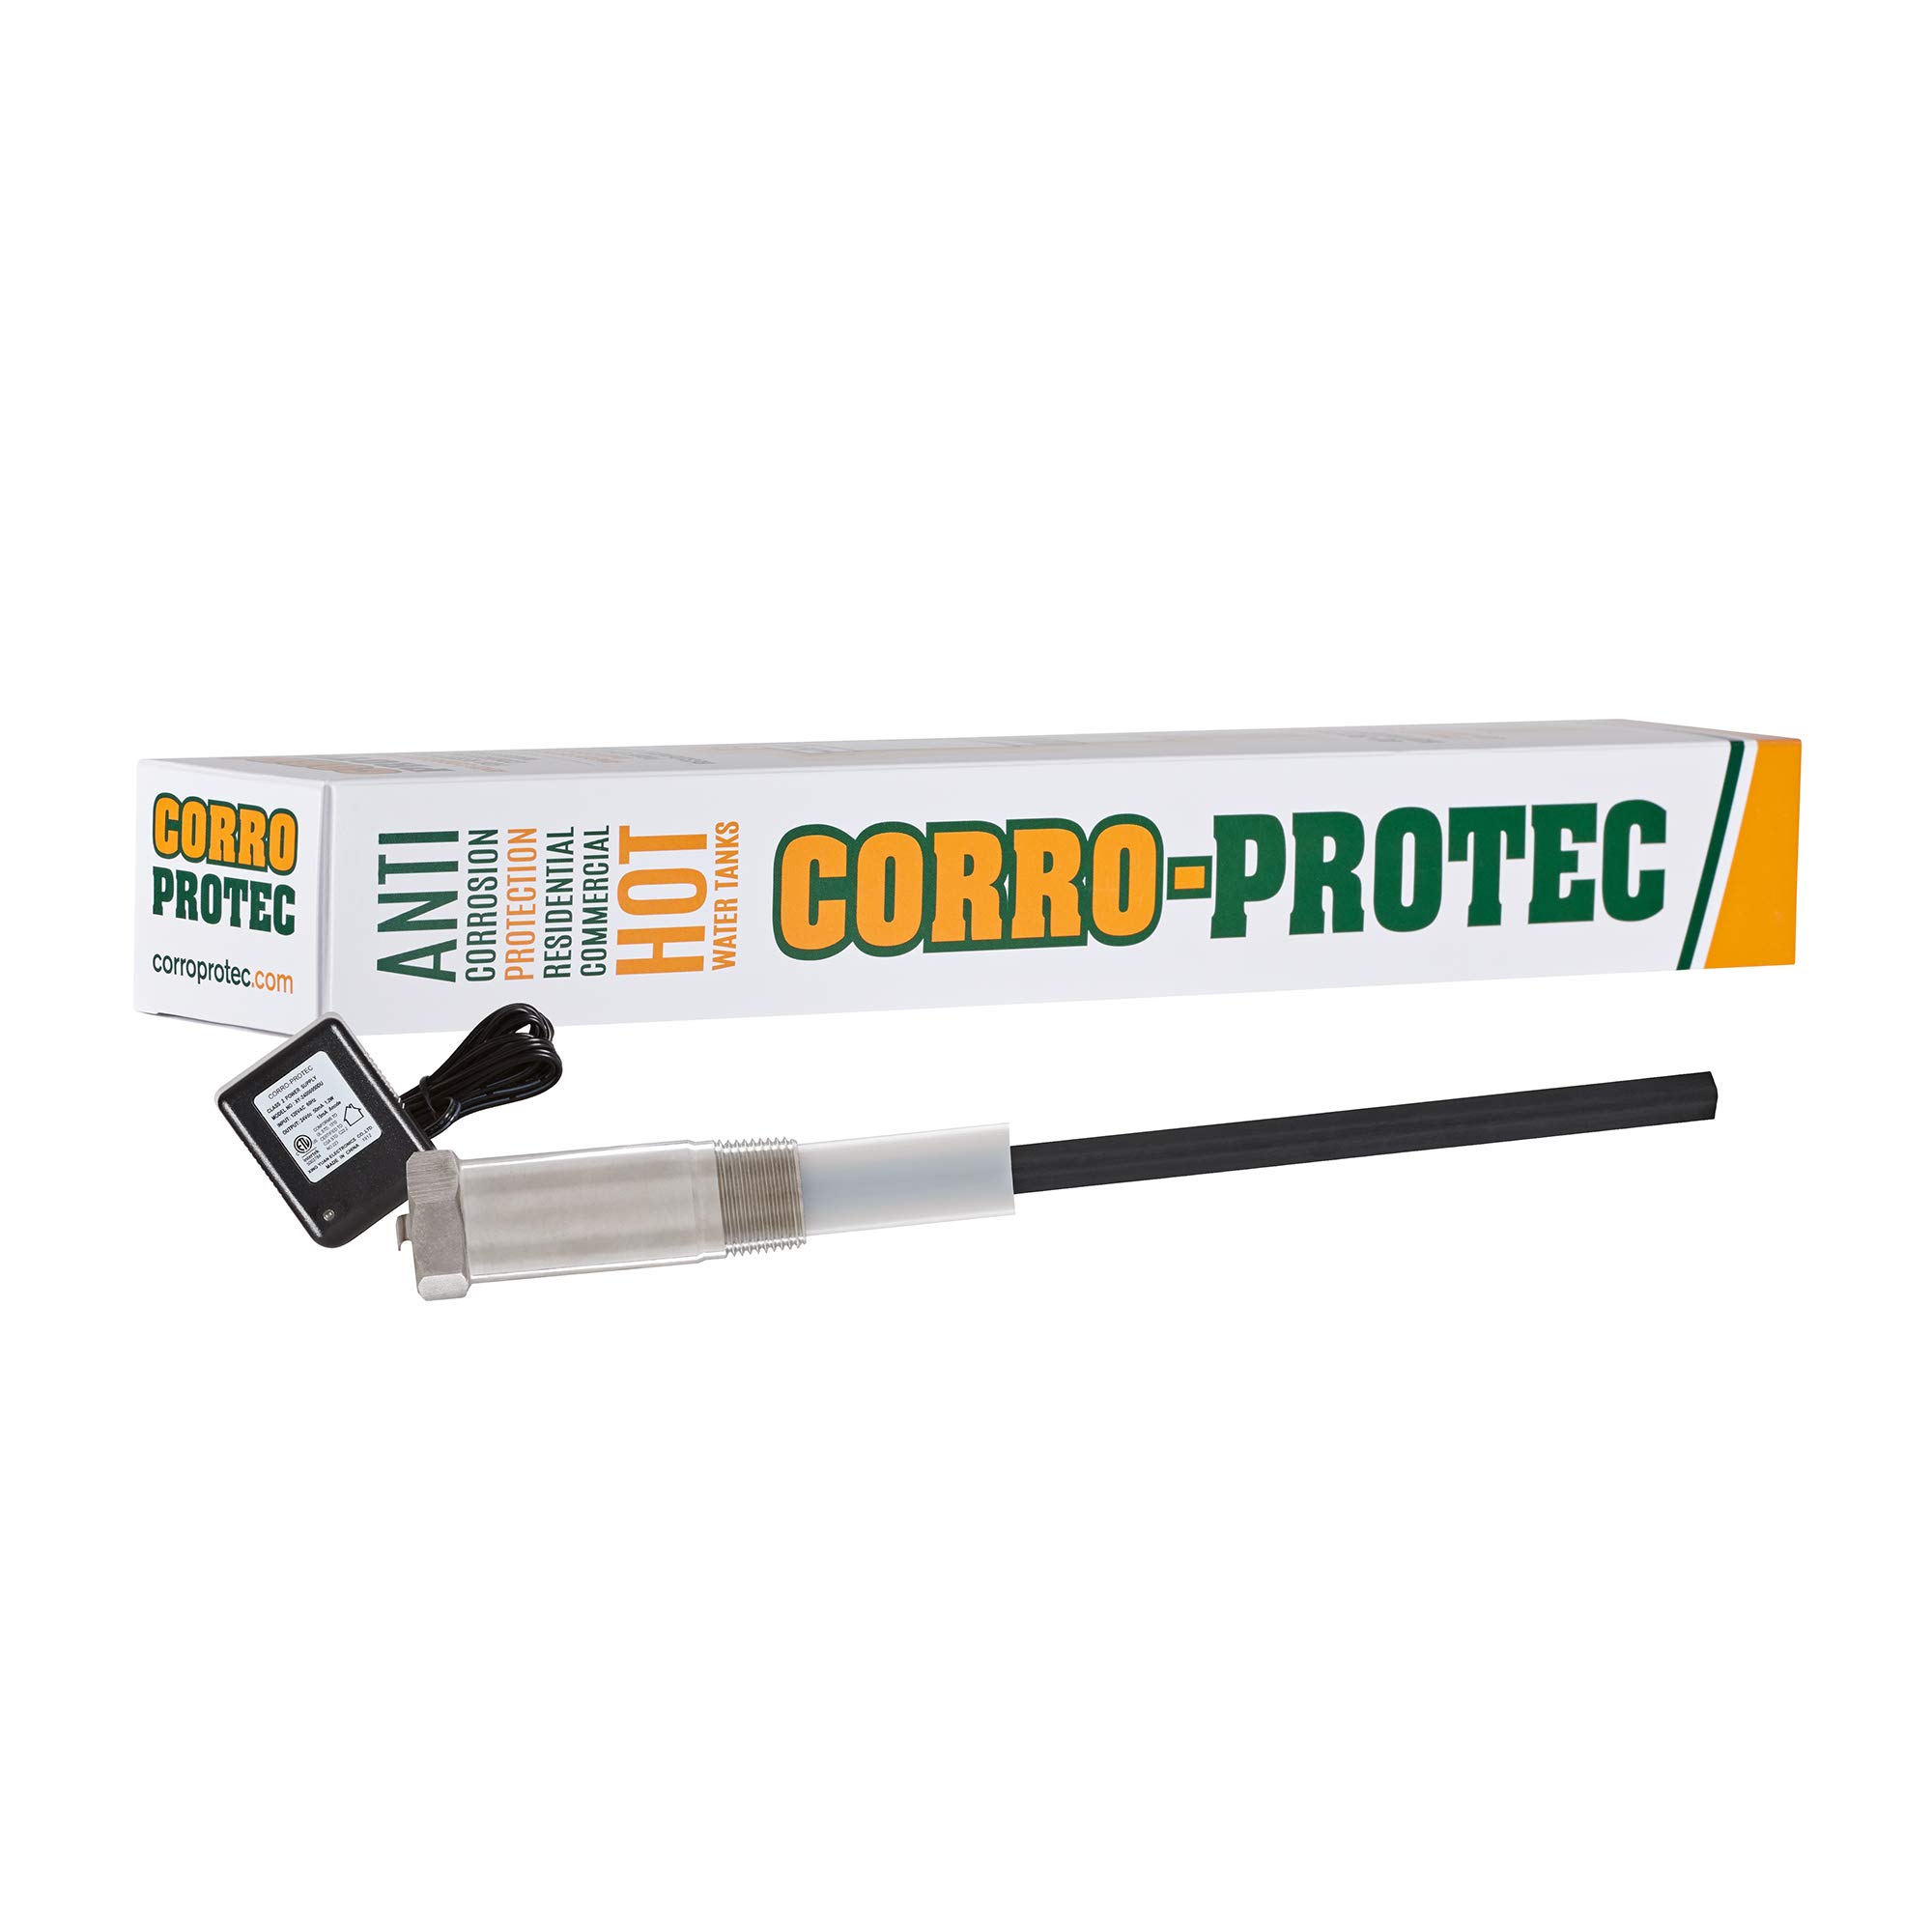 Corro-Protec CP-R 热水器供电钛阳极棒（适用于带有集成阳极棒的热水器）- 消除气味（硫磺/臭鸡蛋味）、腐蚀并减少水垢